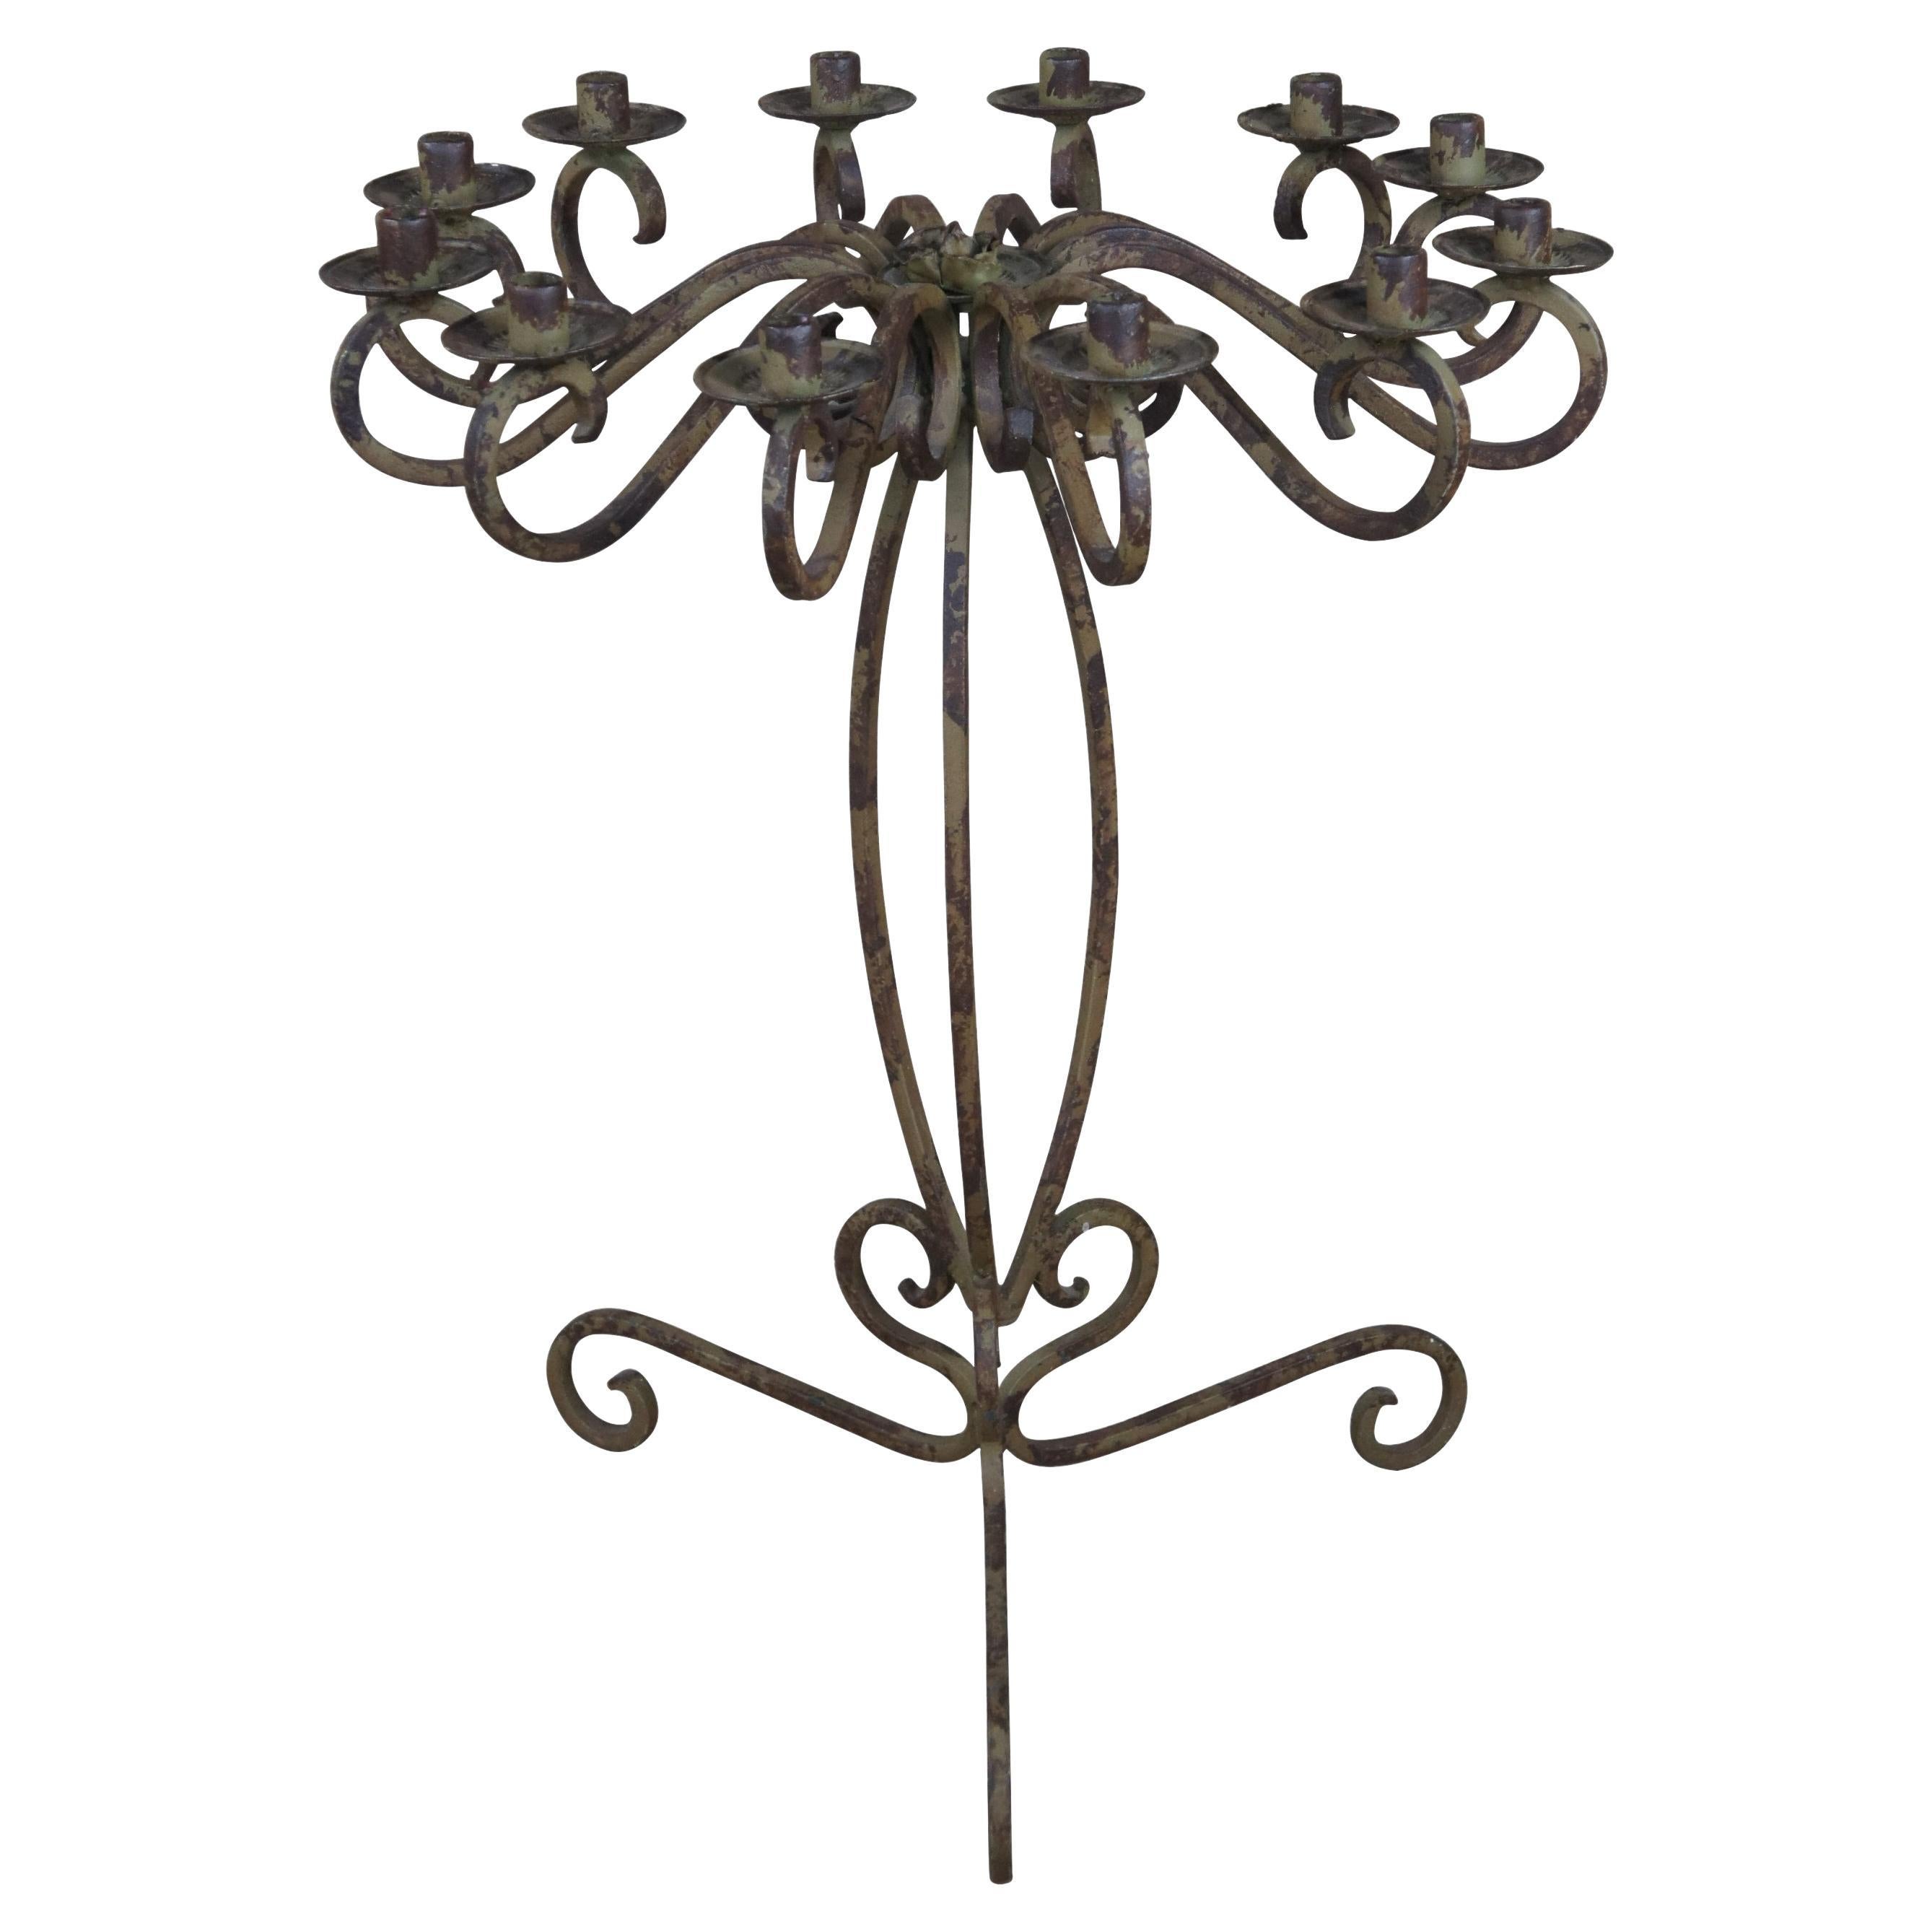 Vieux candélabre gothique français en fer à volutes à 12 lumières sur pied d'autel, style gothique